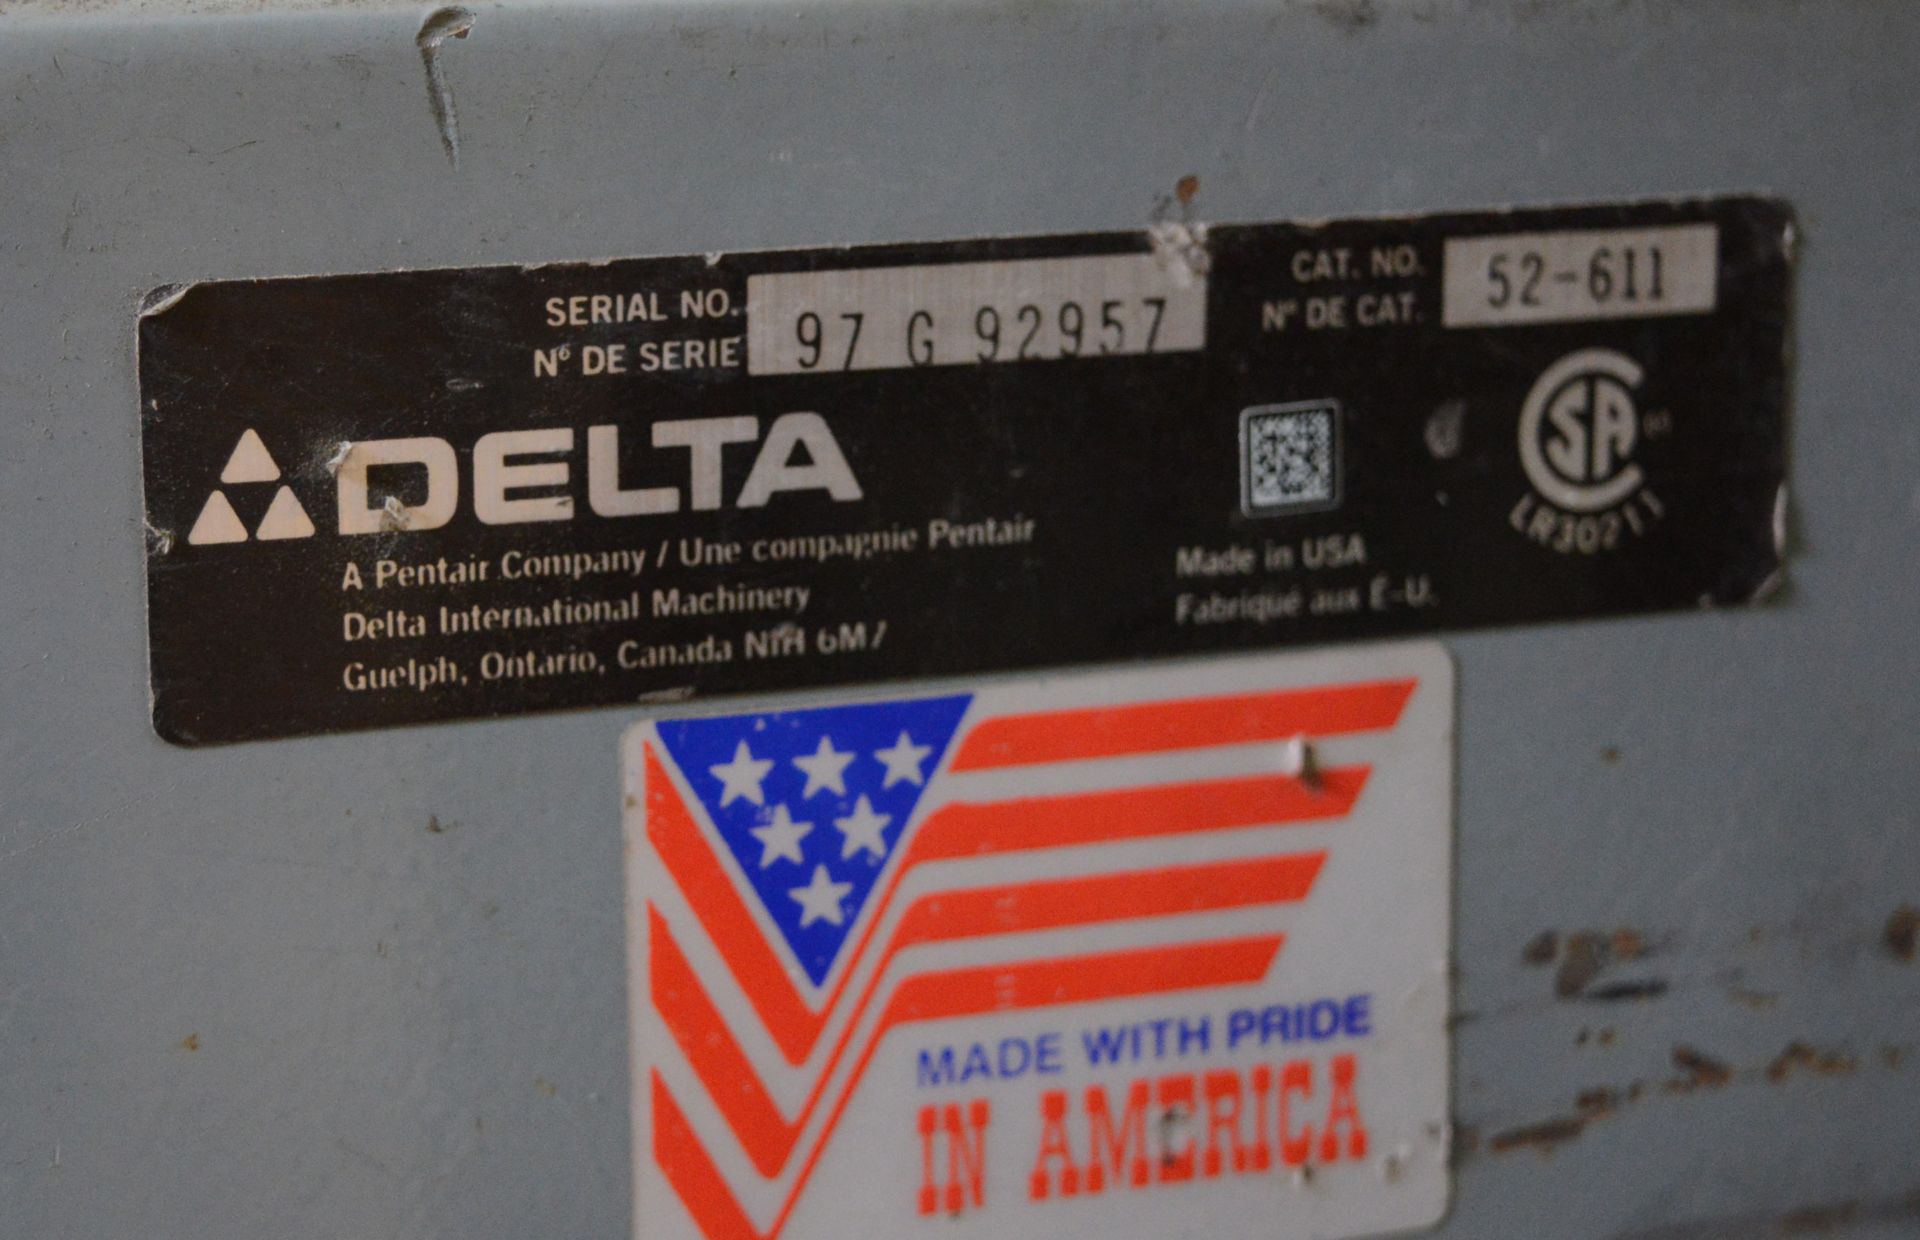 Delta 52-611 Belt & Disc Sander Dual Voltage - Image 6 of 6